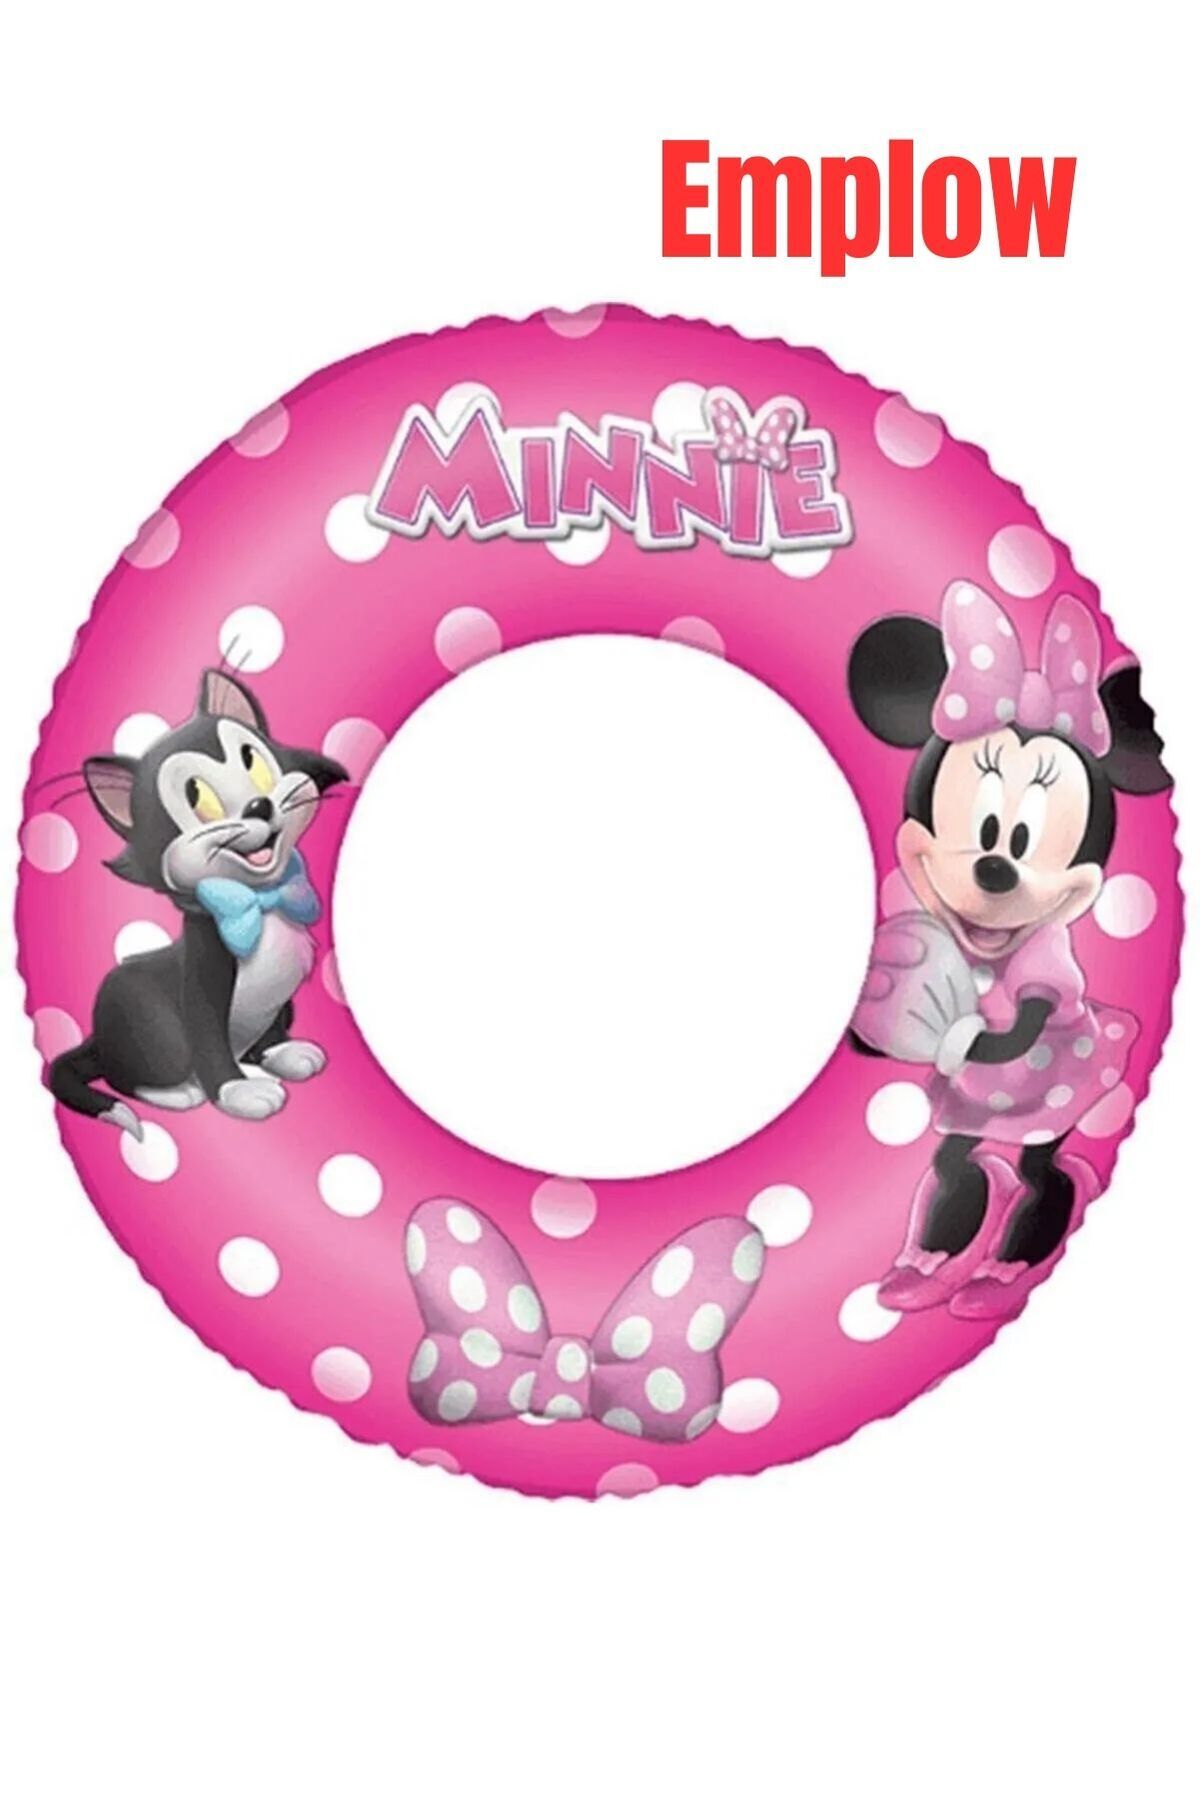 emplow Minnie Mouse Simit 56 cm 91040